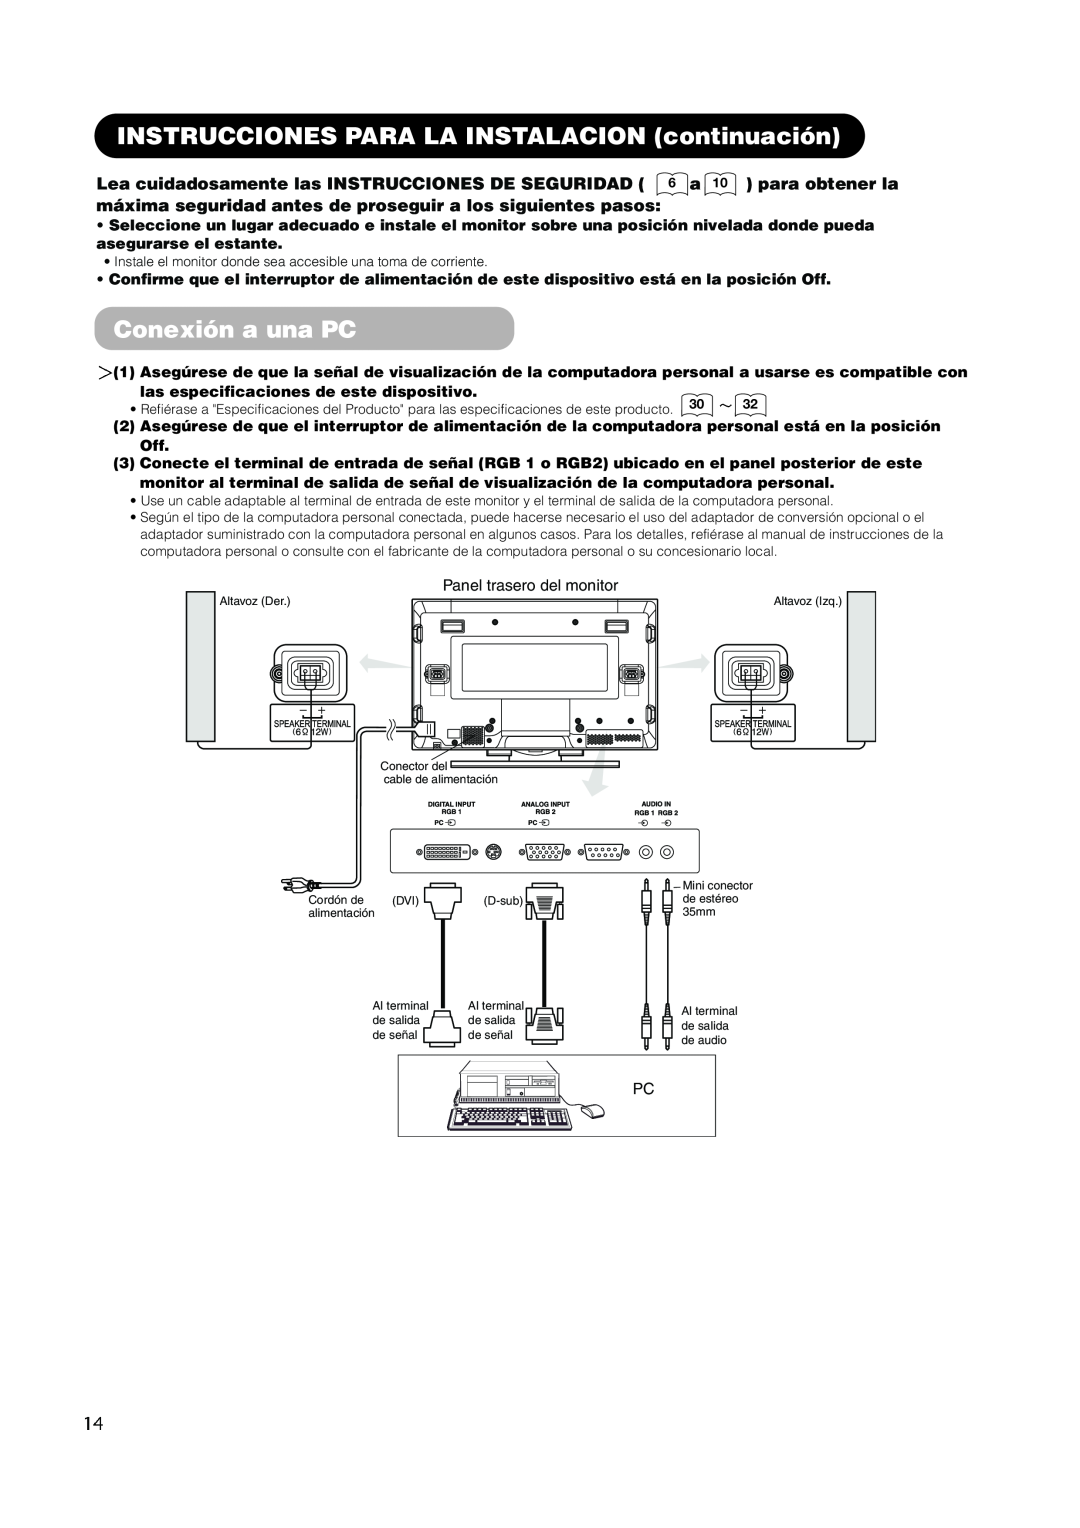 Hitachi PW1A user manual INSTRUCCIONES PARA LA INSTALACION continuación, Conexión a una PC, Panel trasero del monitor 